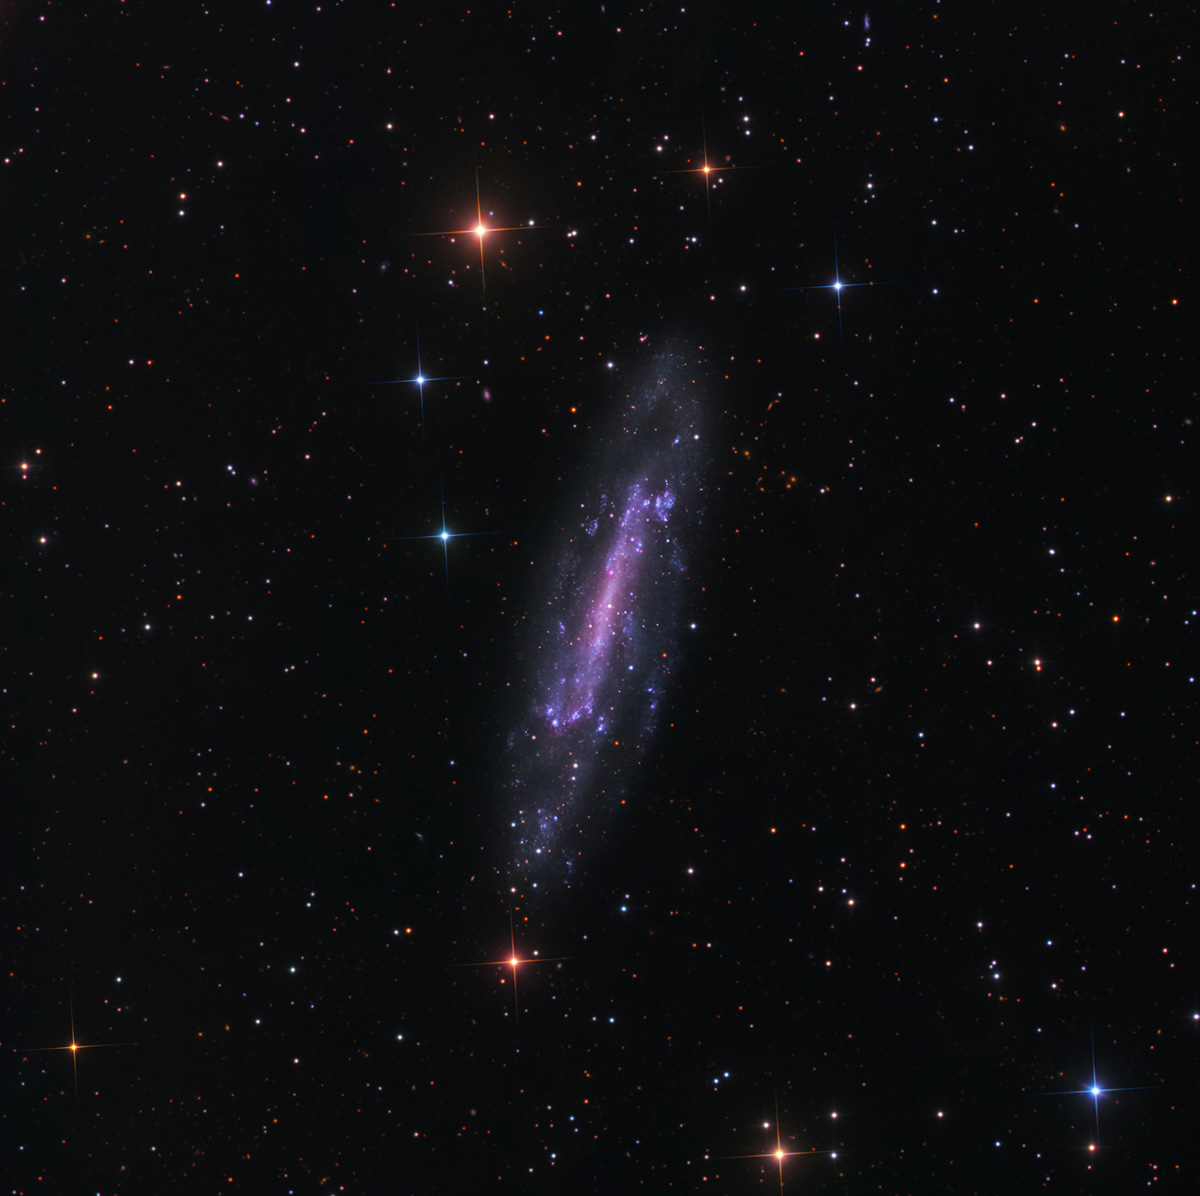 NGC 4236 